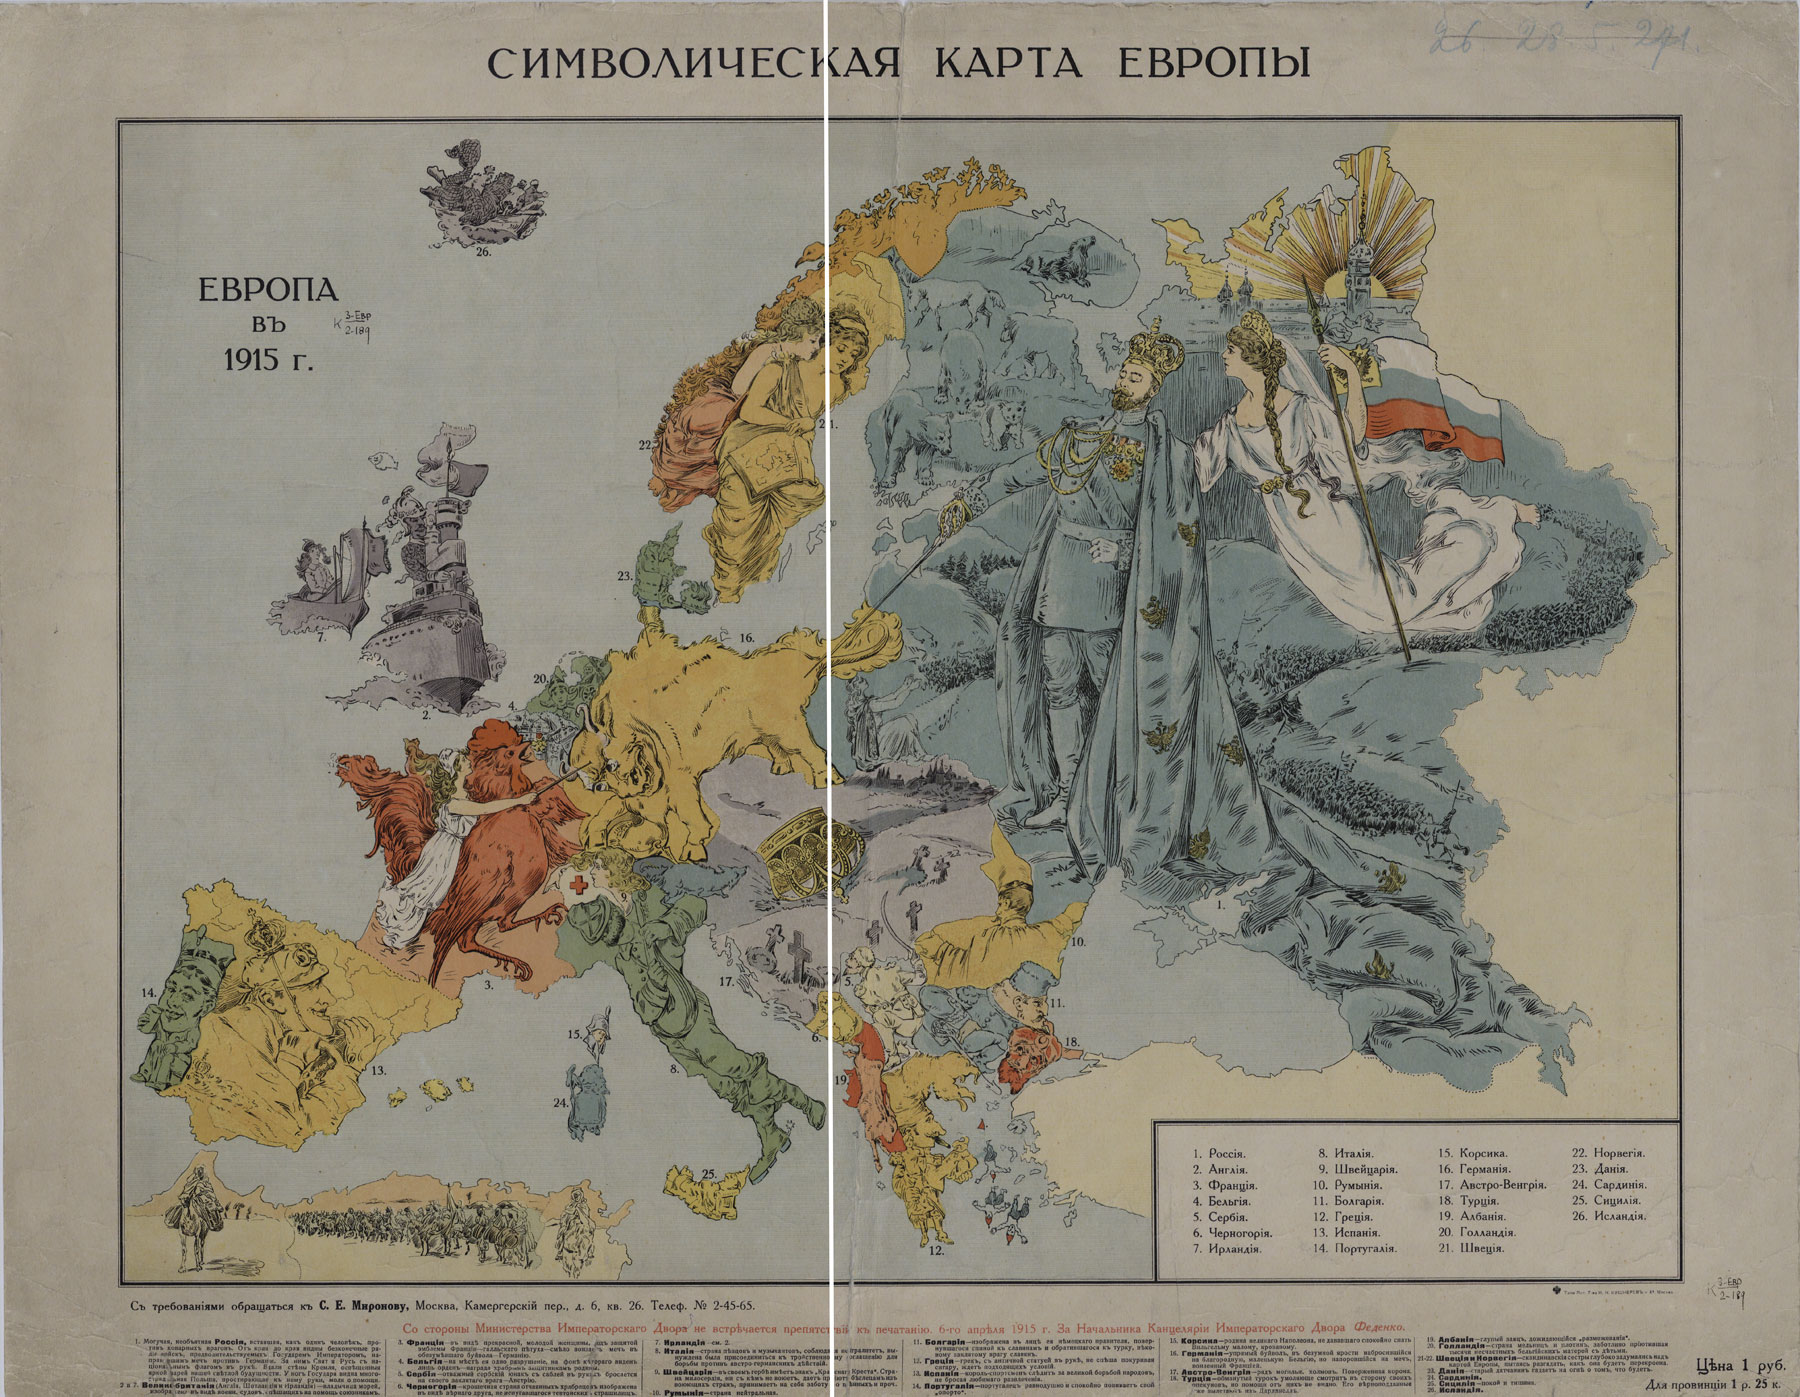 Map World War 1